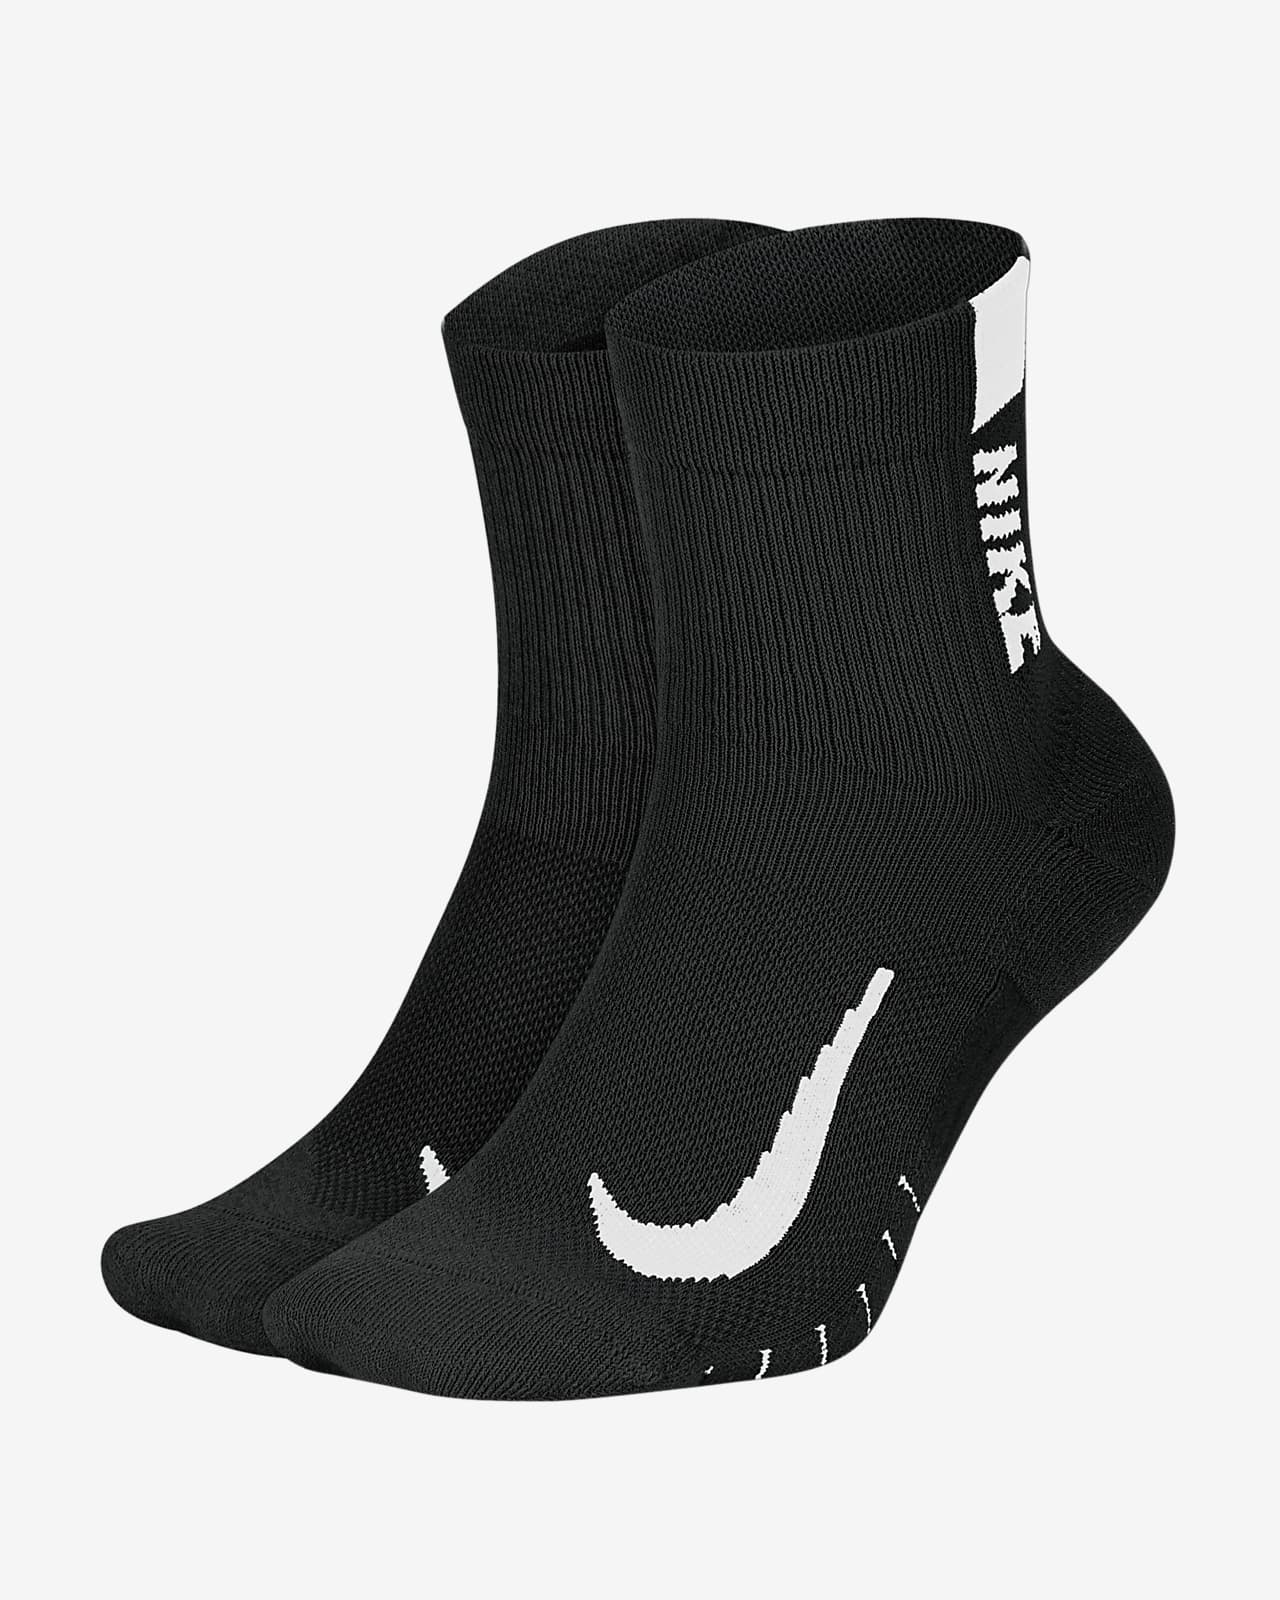 Nike-Socks Brand For Men